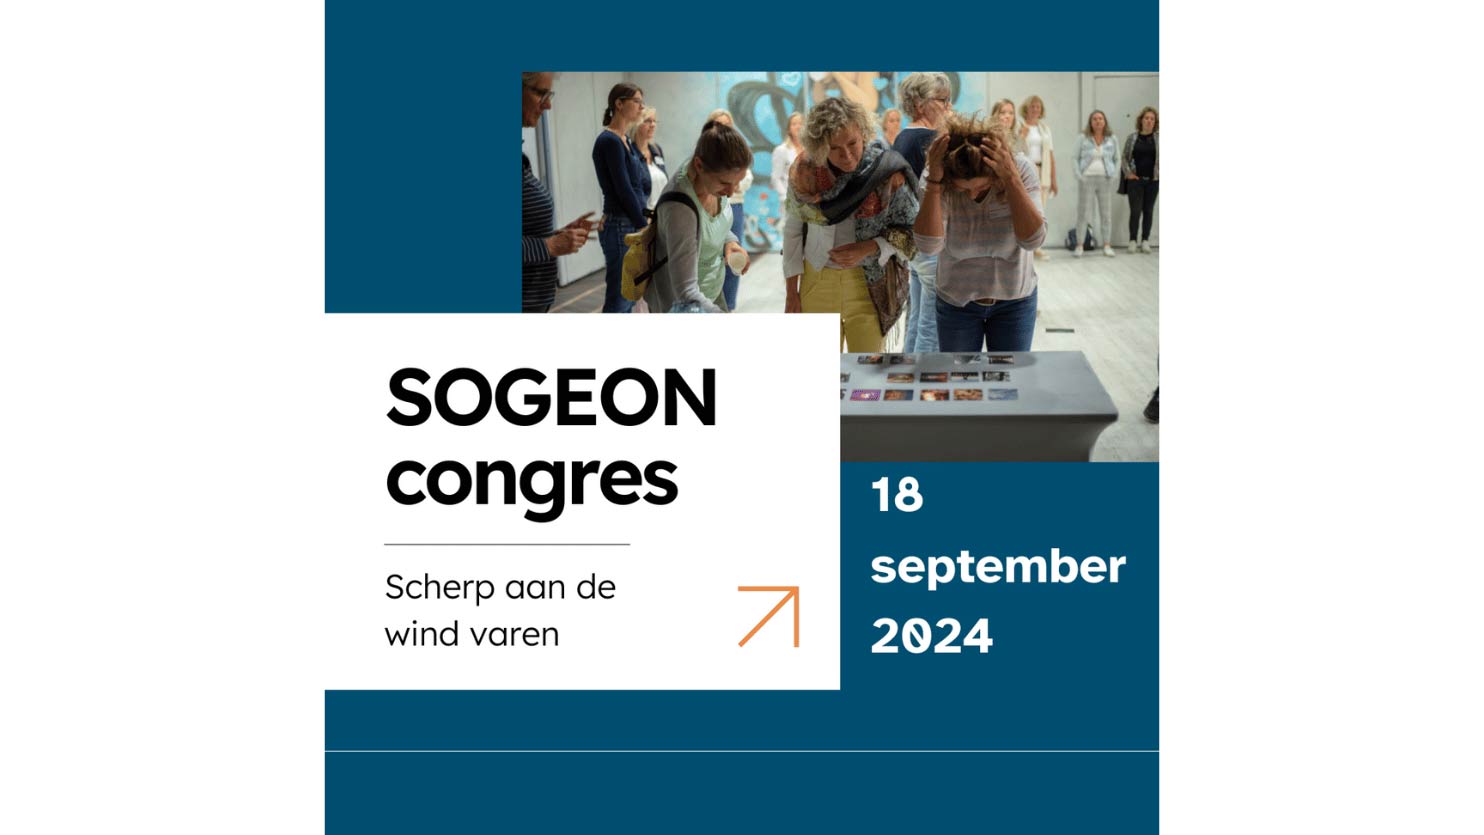 sogeon-congres-1484x835